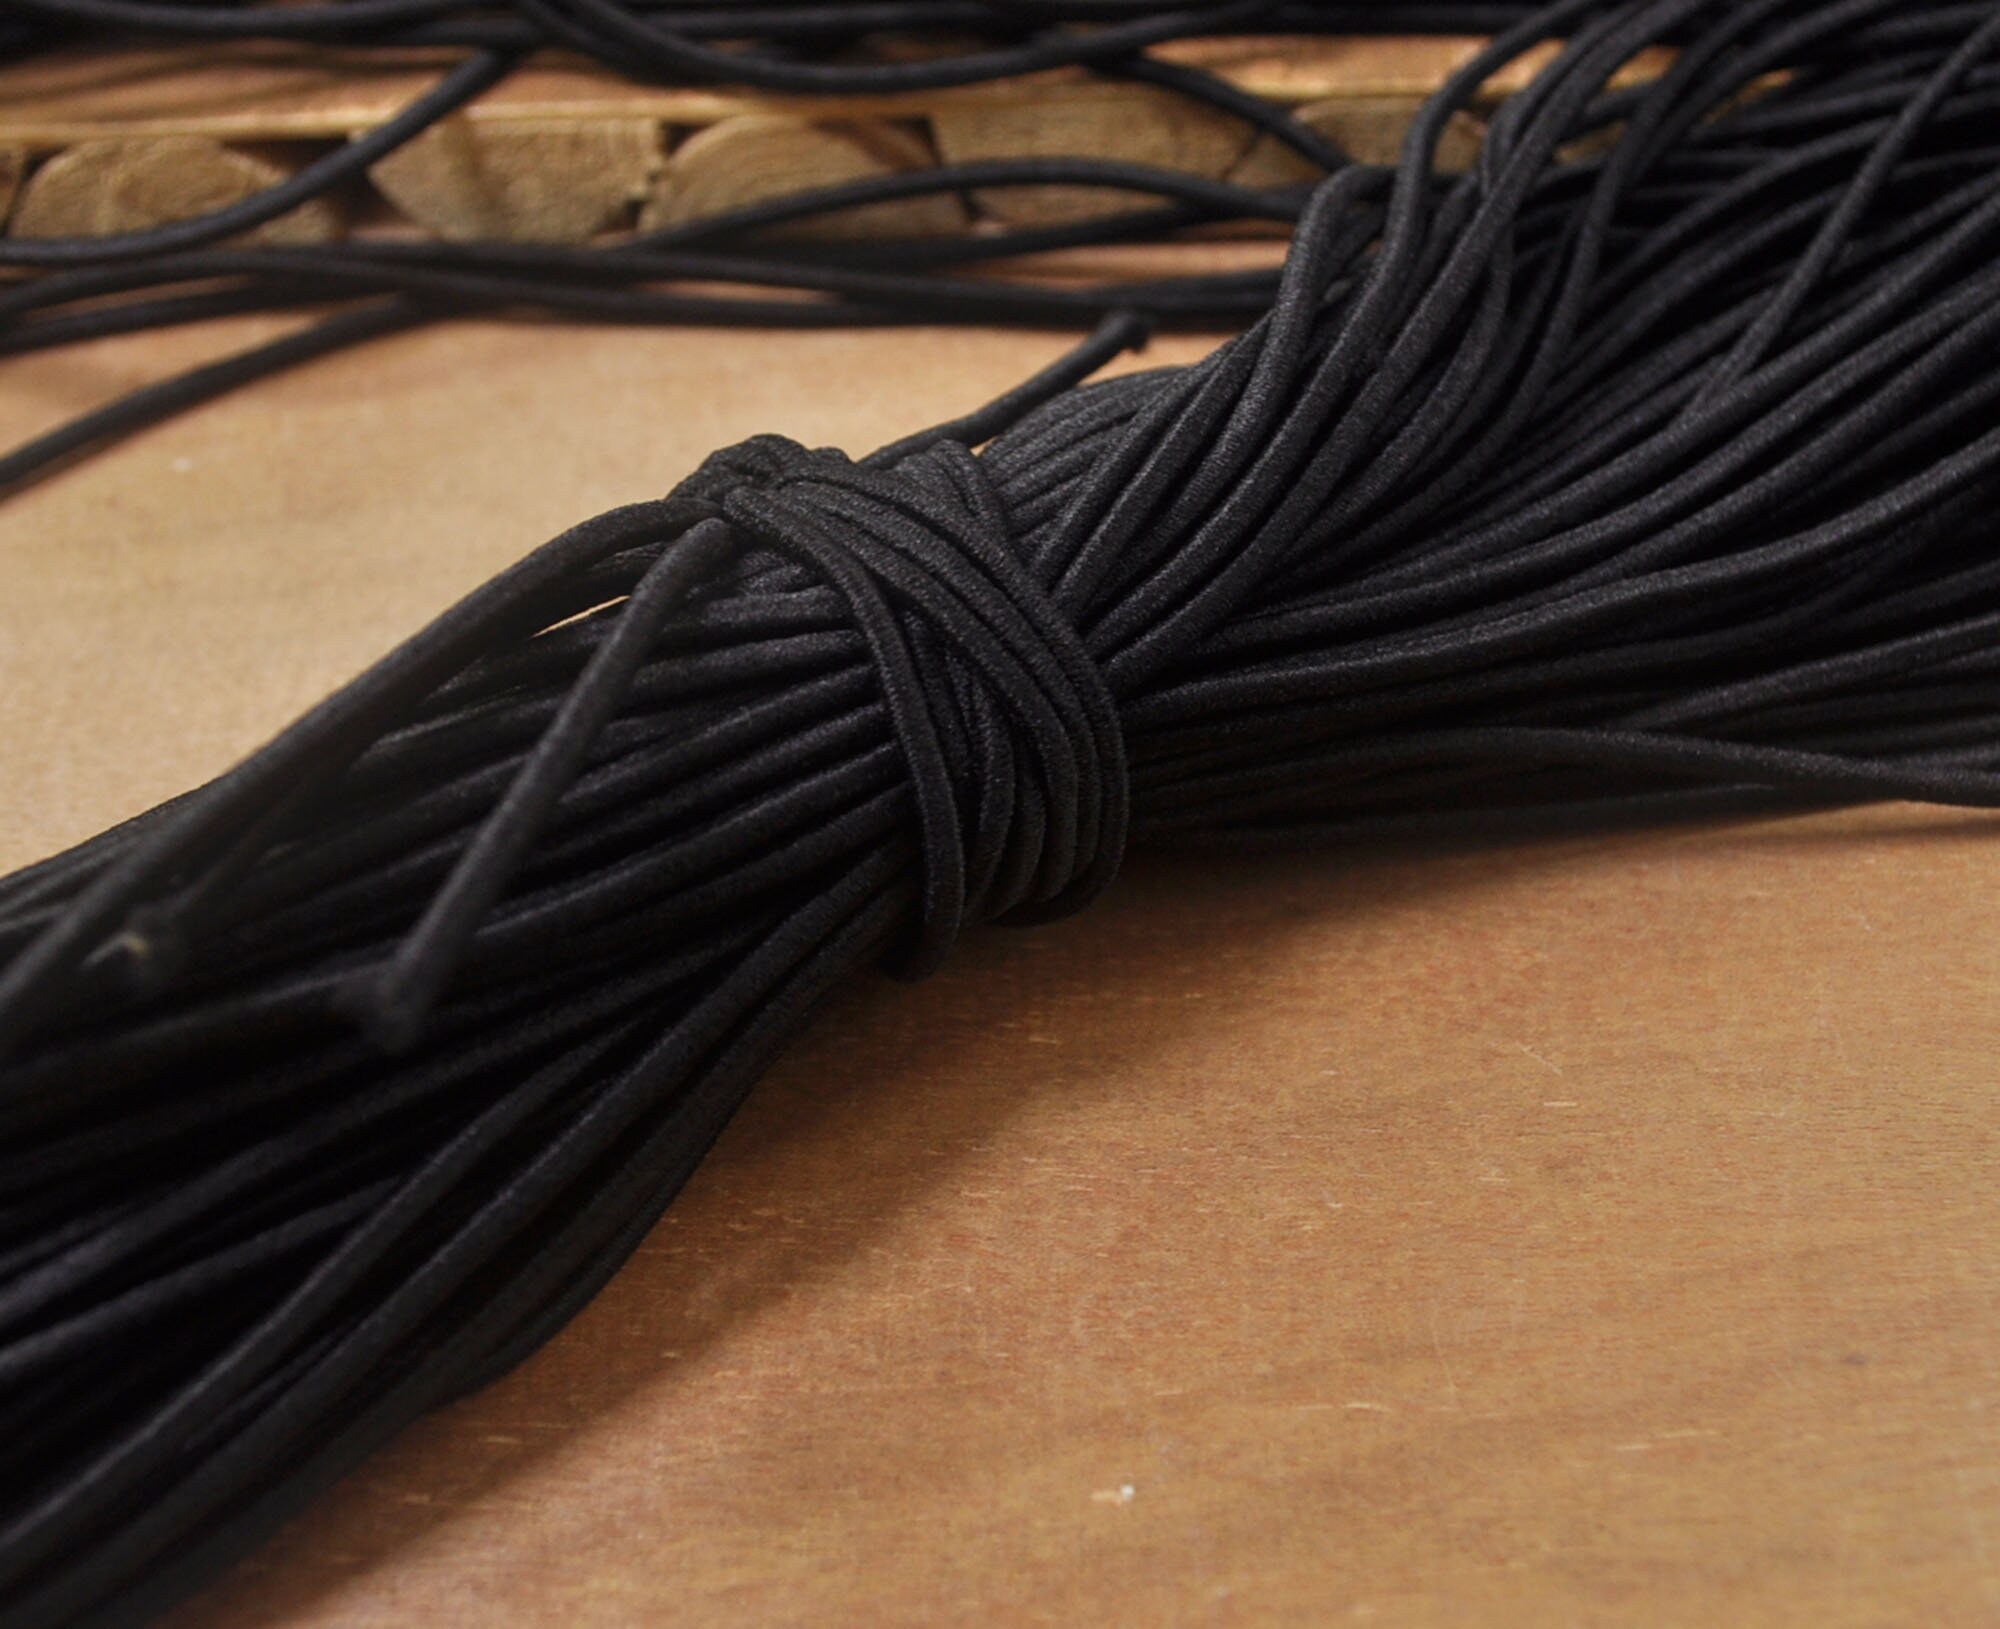 Black - Elastic Cord 2.5 mm (100m Spool)